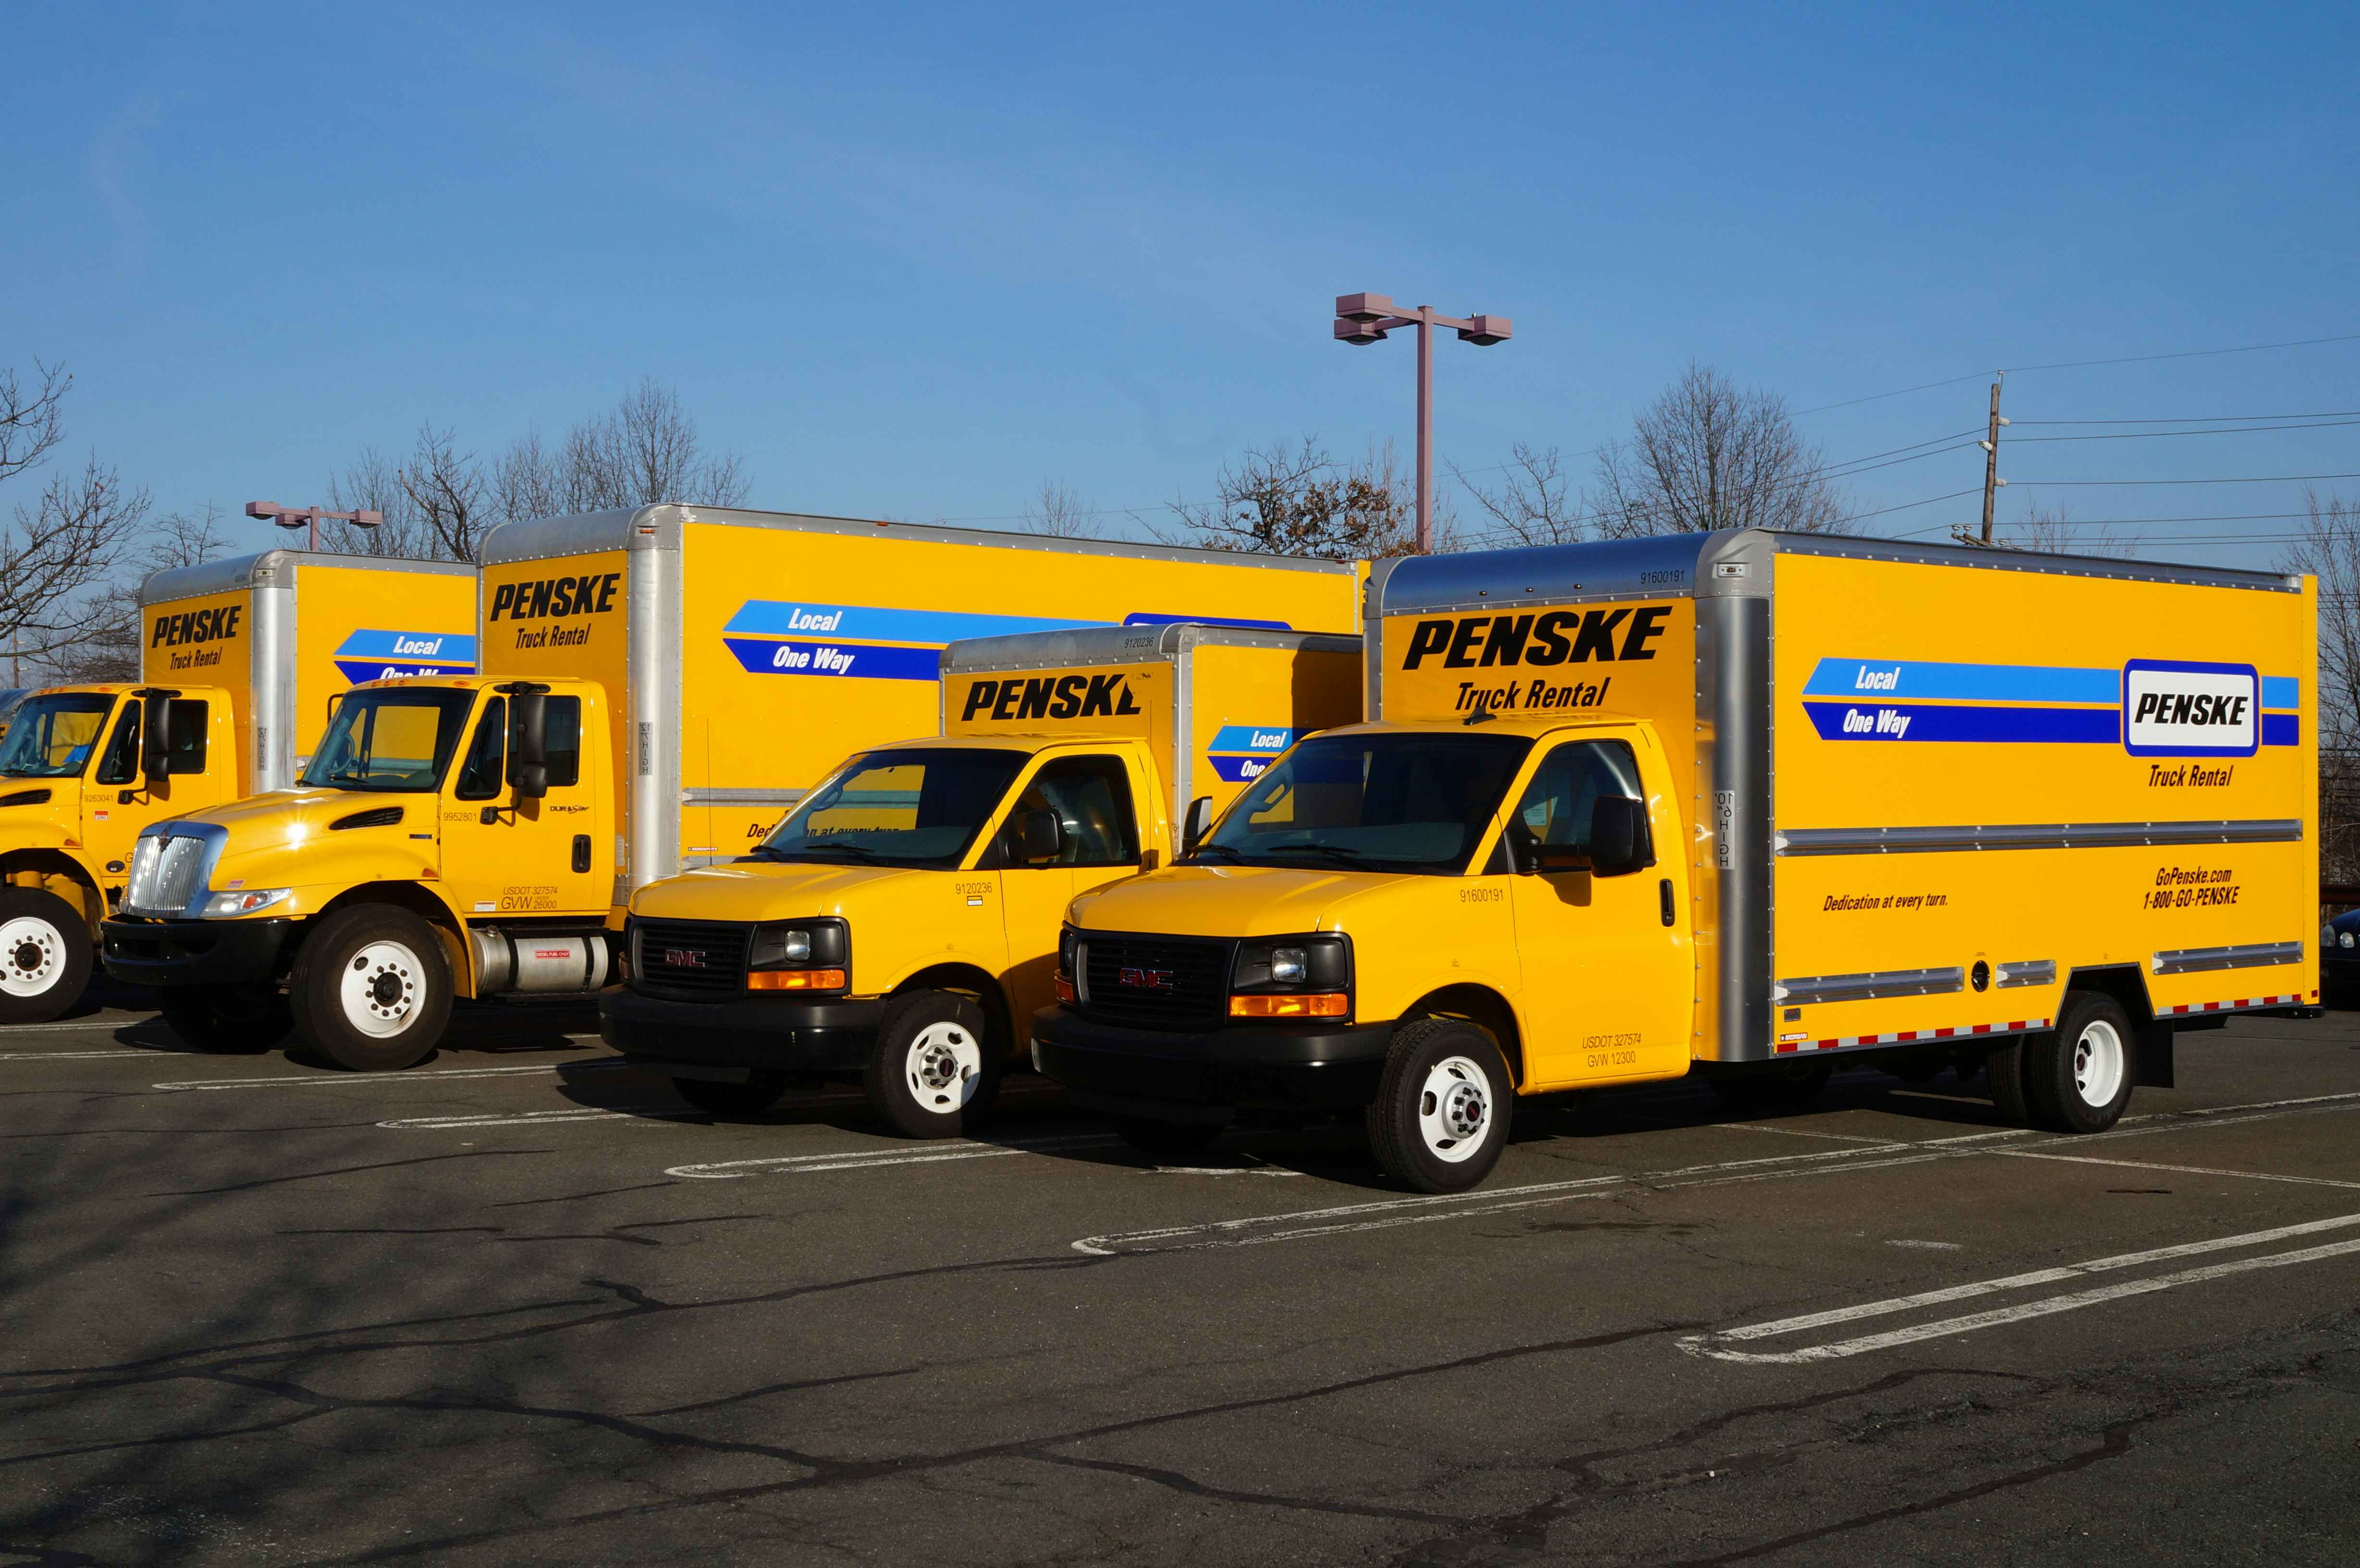 A row of Penske trucks parked in a parking lot